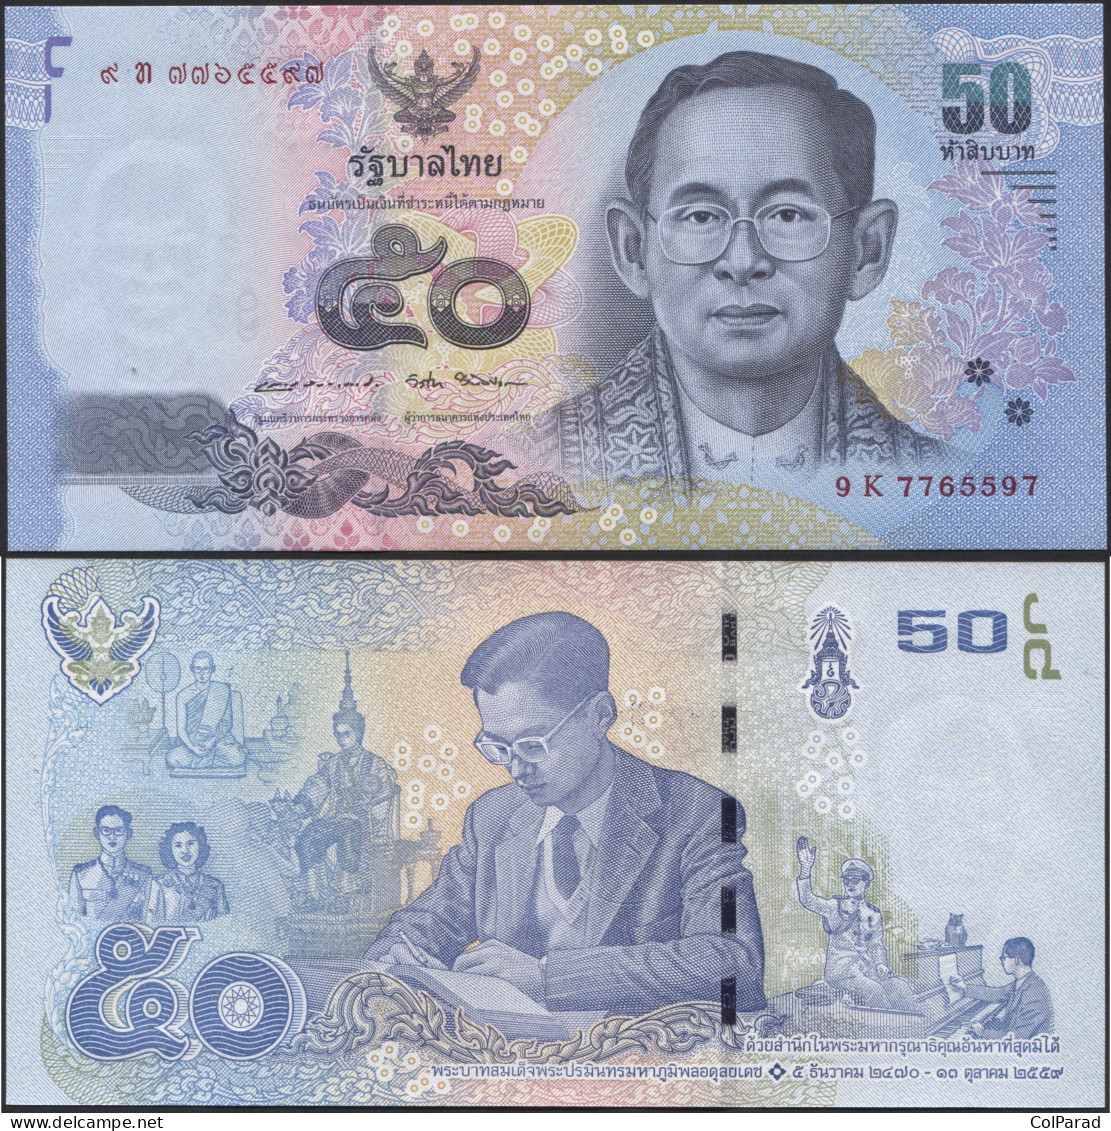 THAILAND 50 BAHT - BE2559 (2017)  - Paper Unc - P.131a Banknote - Thaïlande